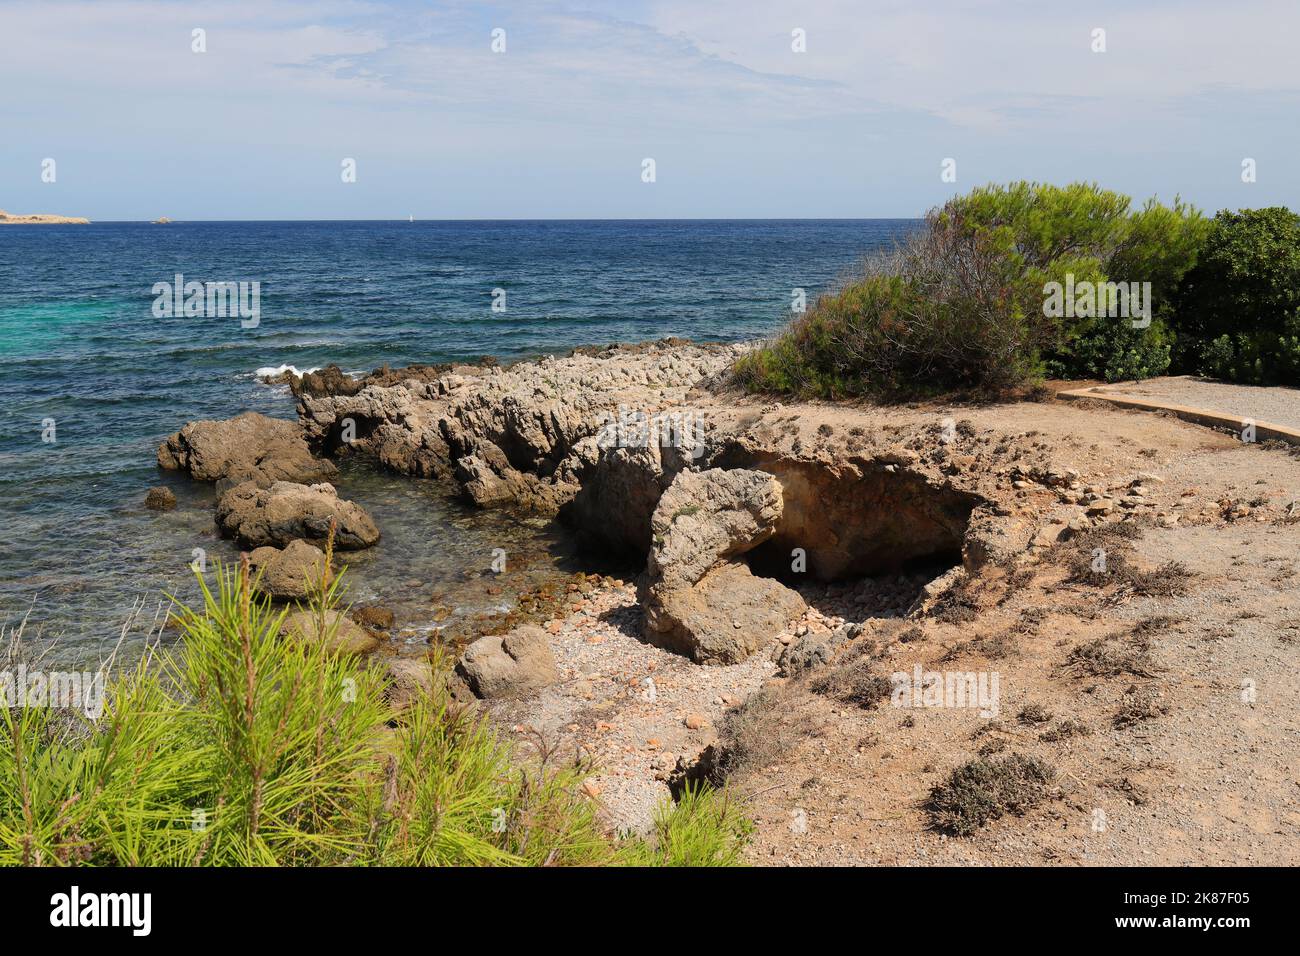 Vue idyllique d'une plage rocheuse avec végétation verte en premier plan et en arrière-plan, Cala Ratjada, Majorque Banque D'Images